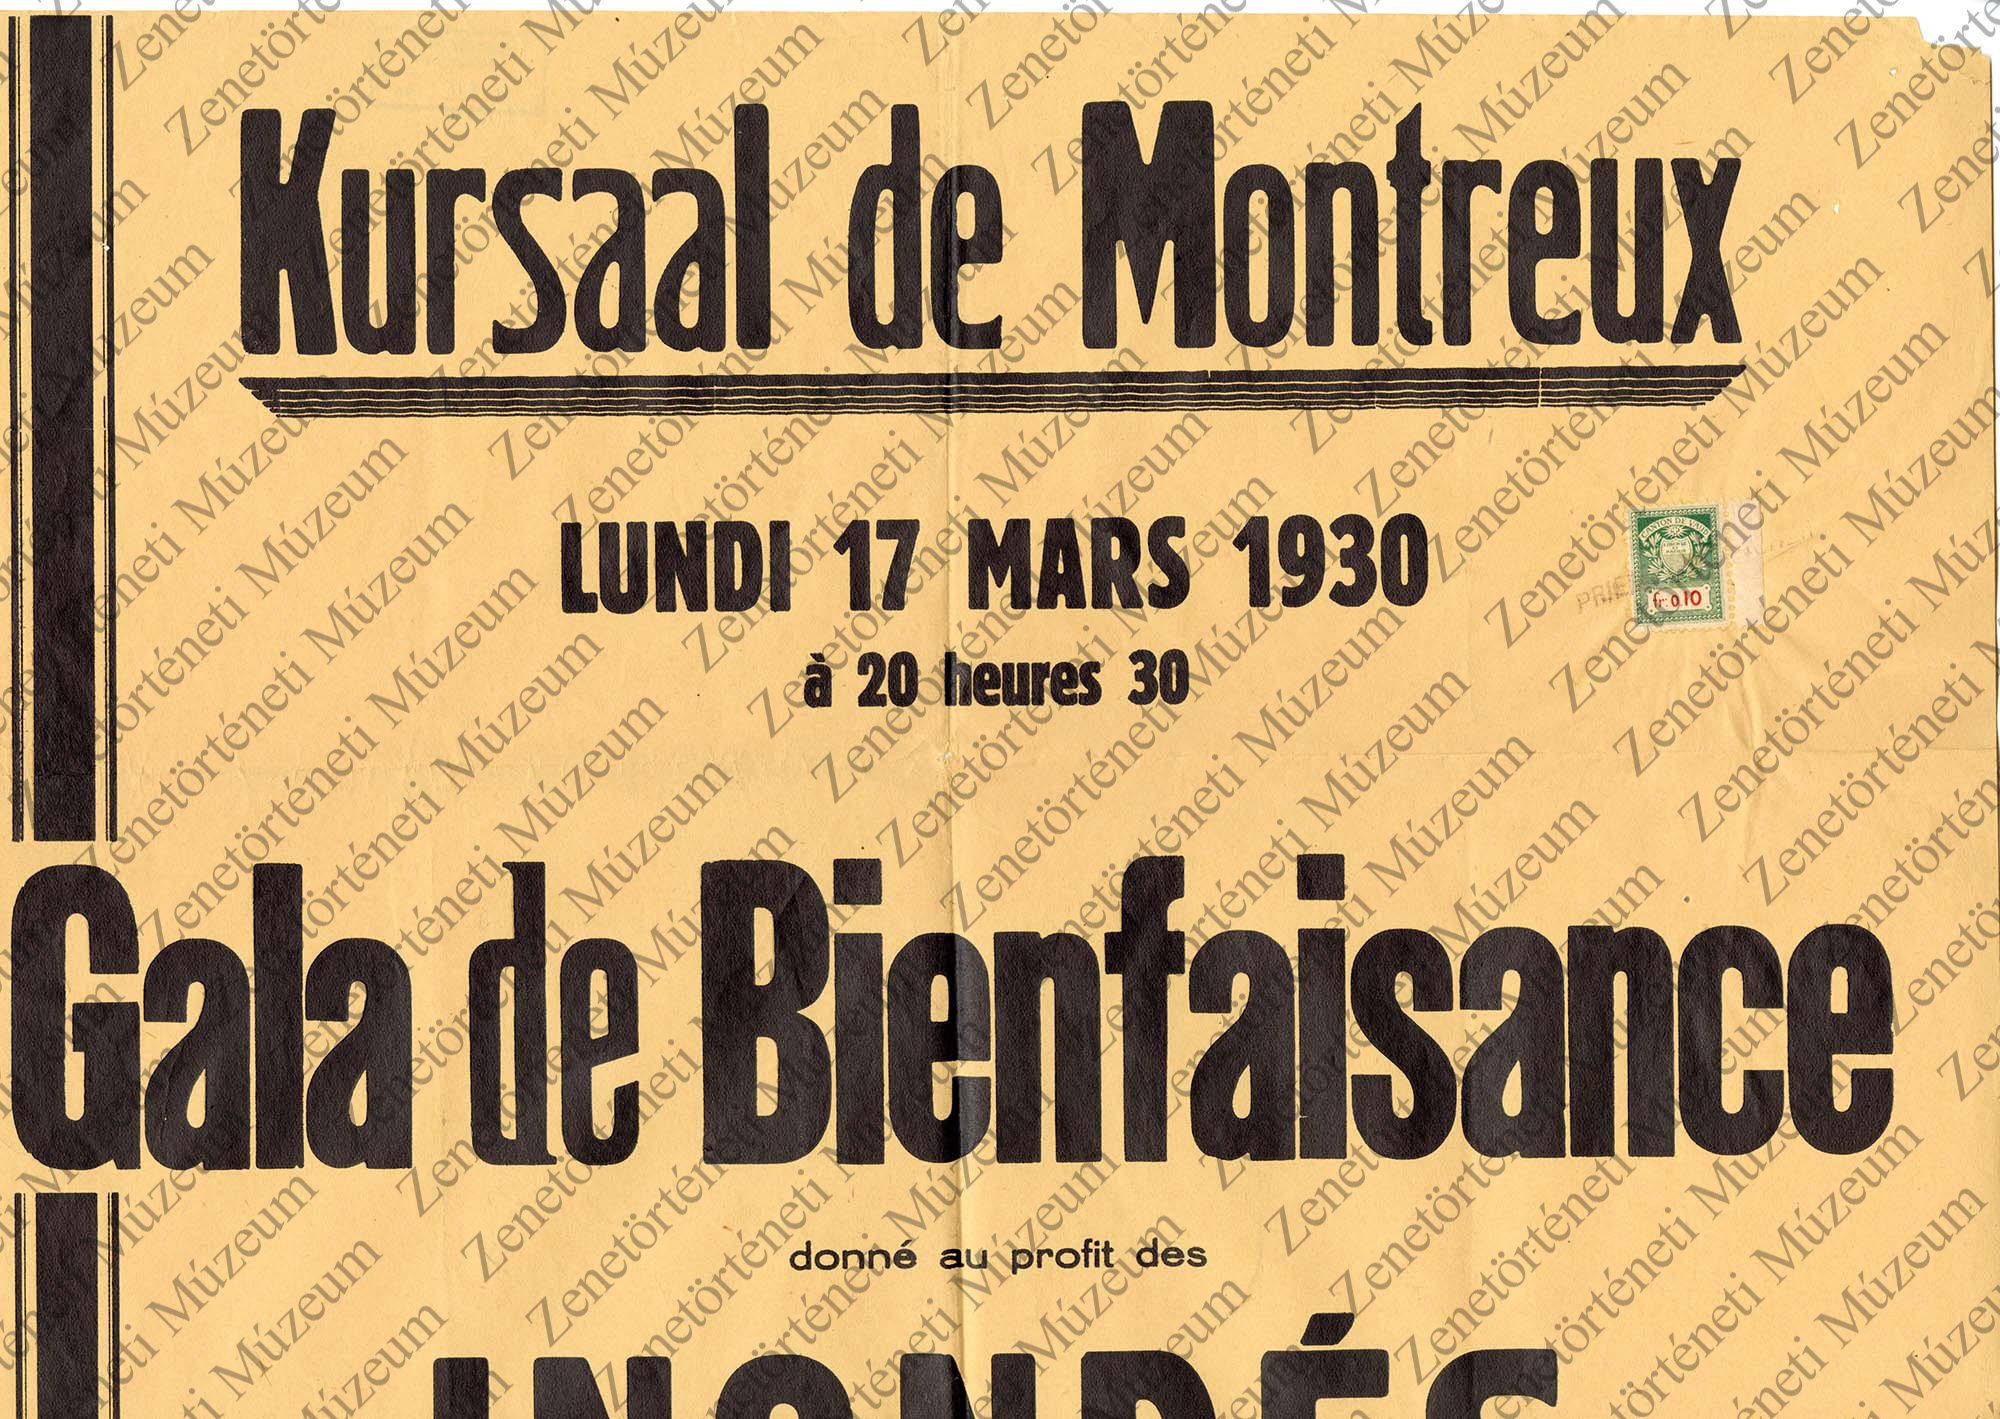 1930. márc. 17. Kursaal de Montreux-beli hangverseny plakátja (Zenetörténeti Múzeum CC BY-NC-SA)